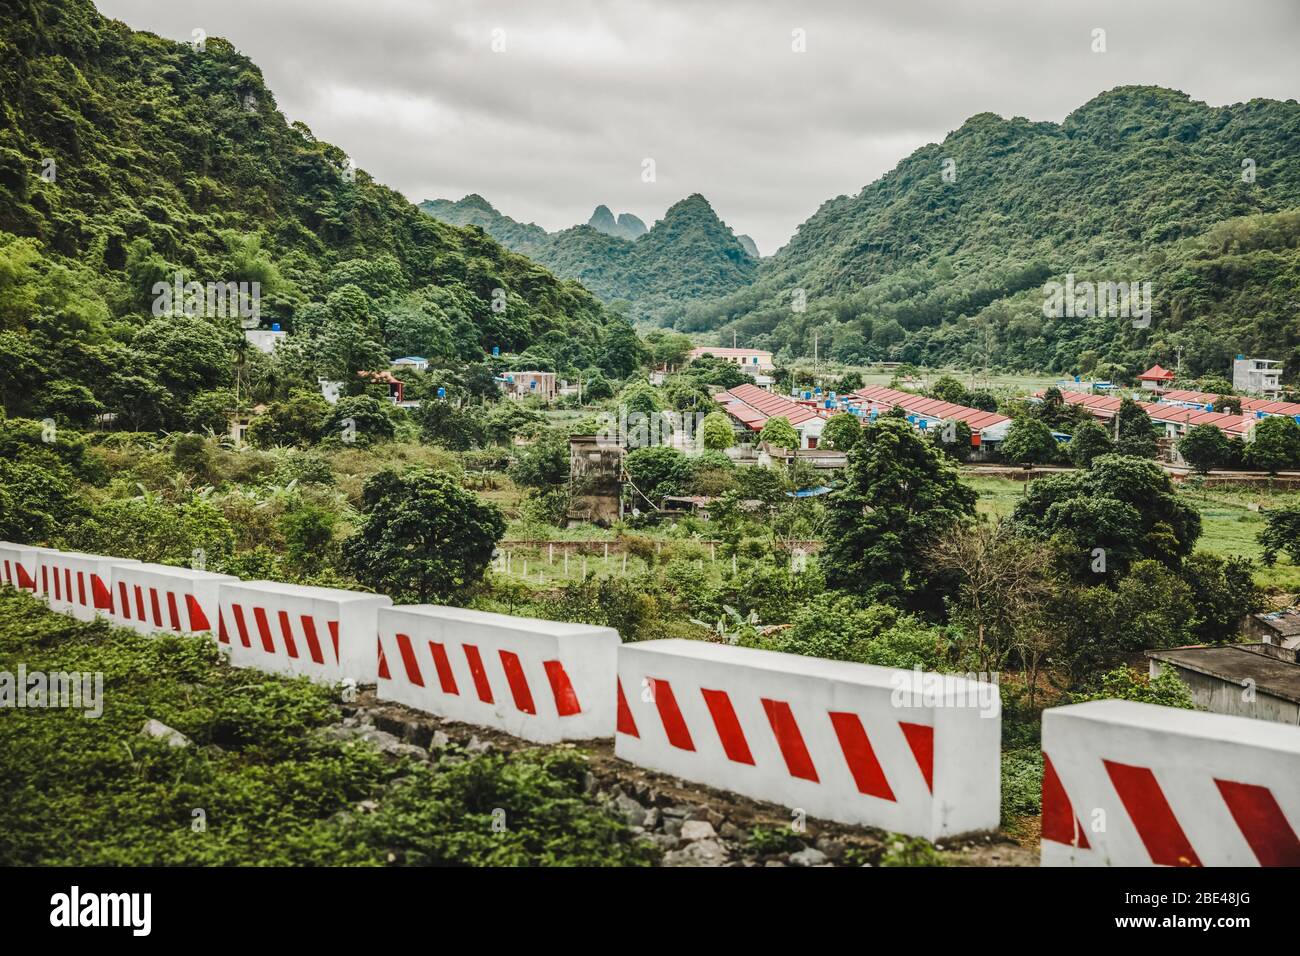 Barrieren durch die Landschaft mit einer Stadt und üppigem Laub, der die Karstkalkformationen bedeckt; Cat Ba Island, Vietnam Stockfoto